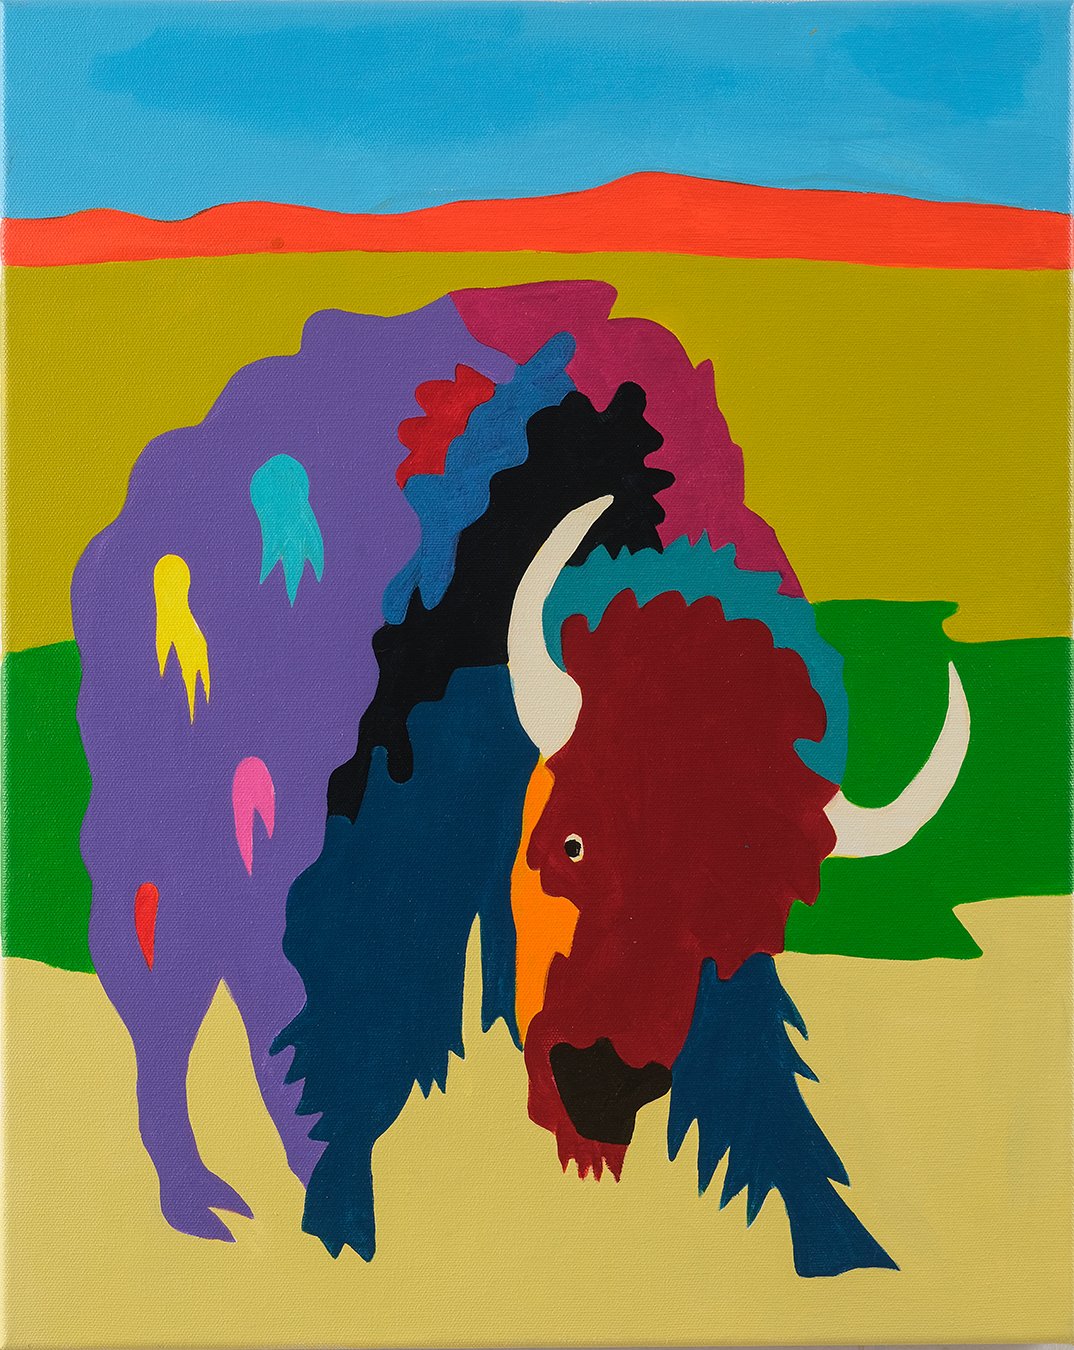   Buffalo Study 2  Acrylic on Canvas 16”x20” 